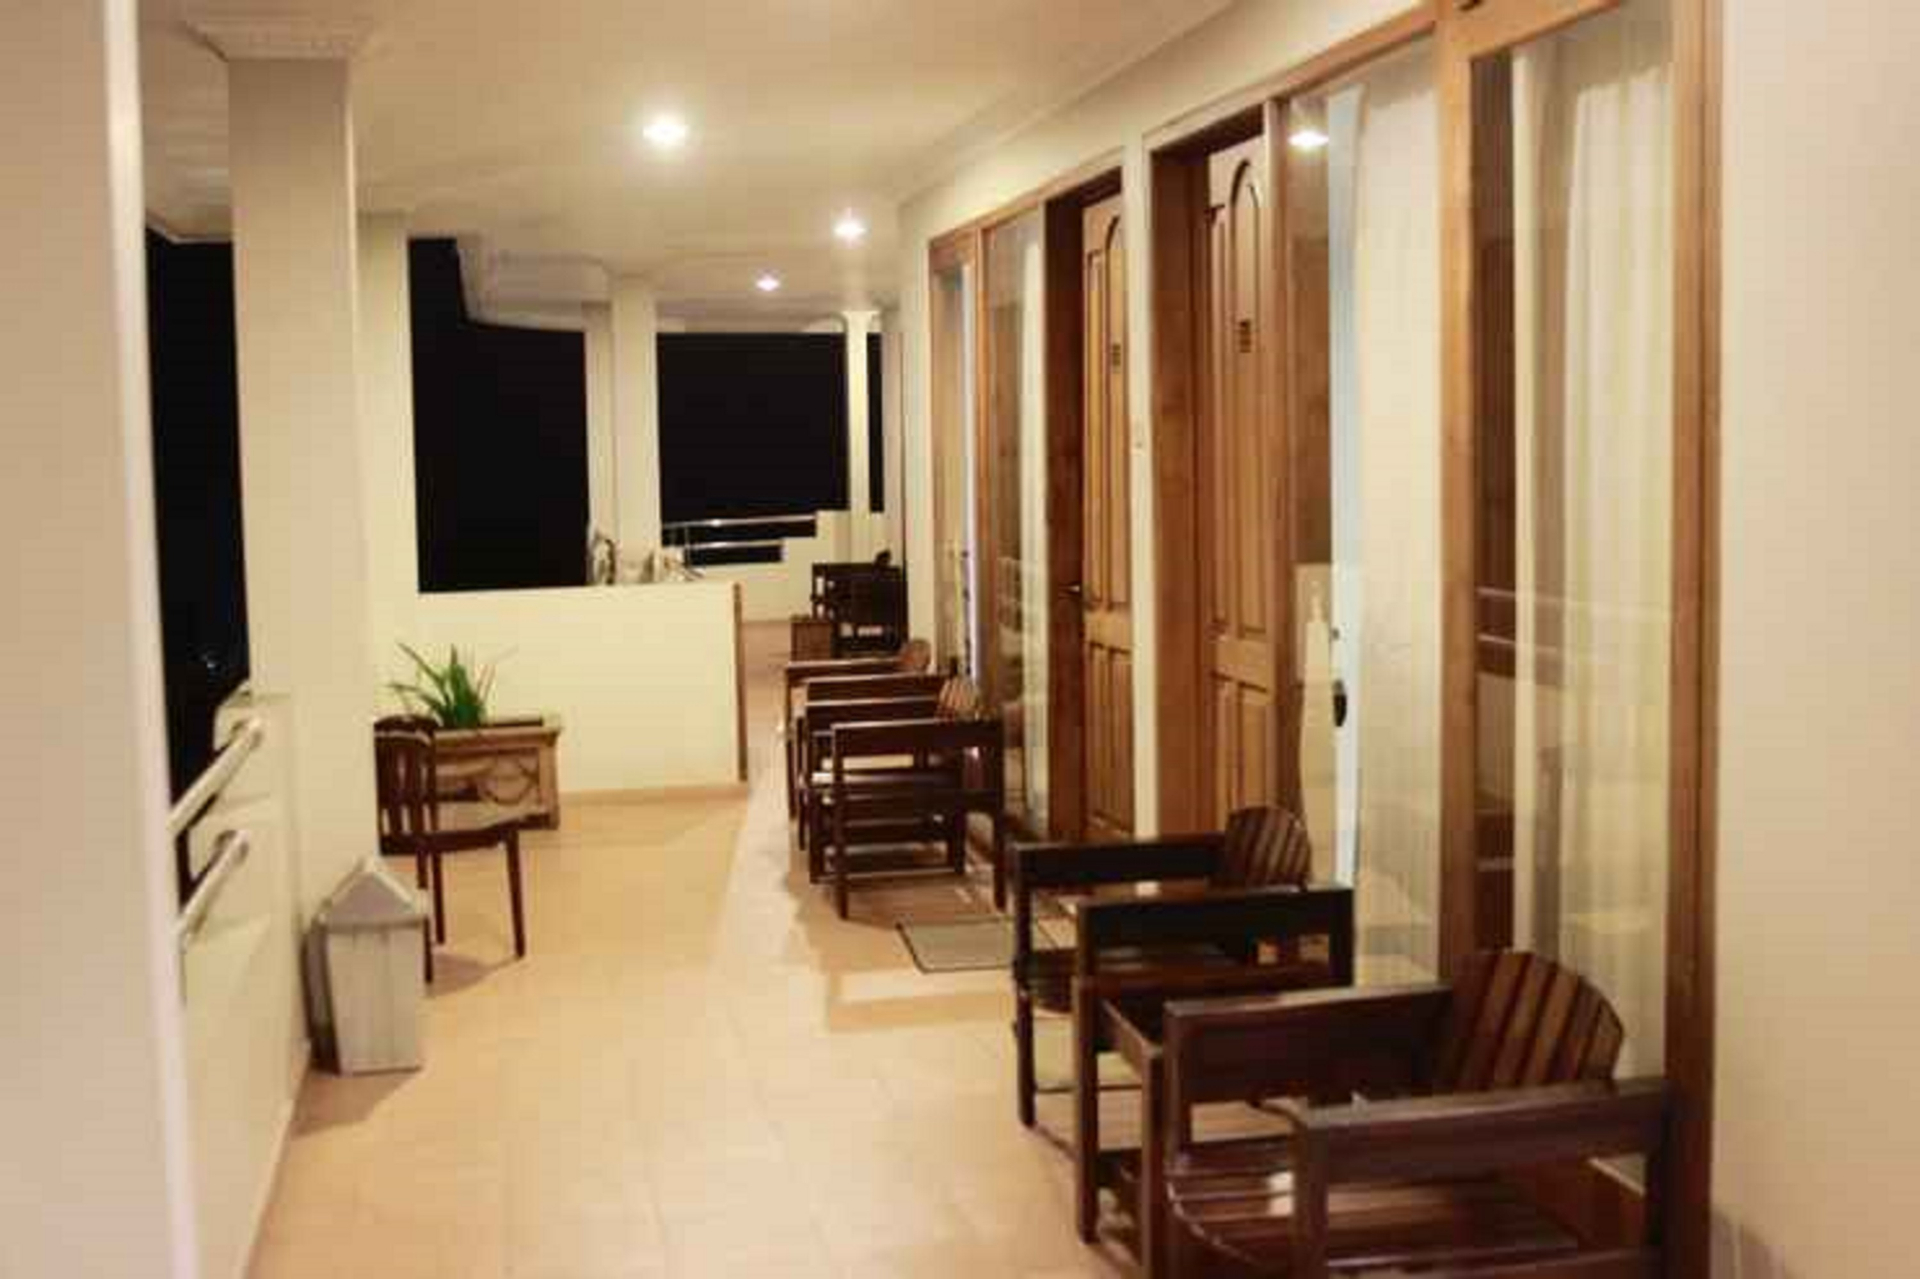 Others, Hotel Pondok Asri Tawangmangu, Karanganyar